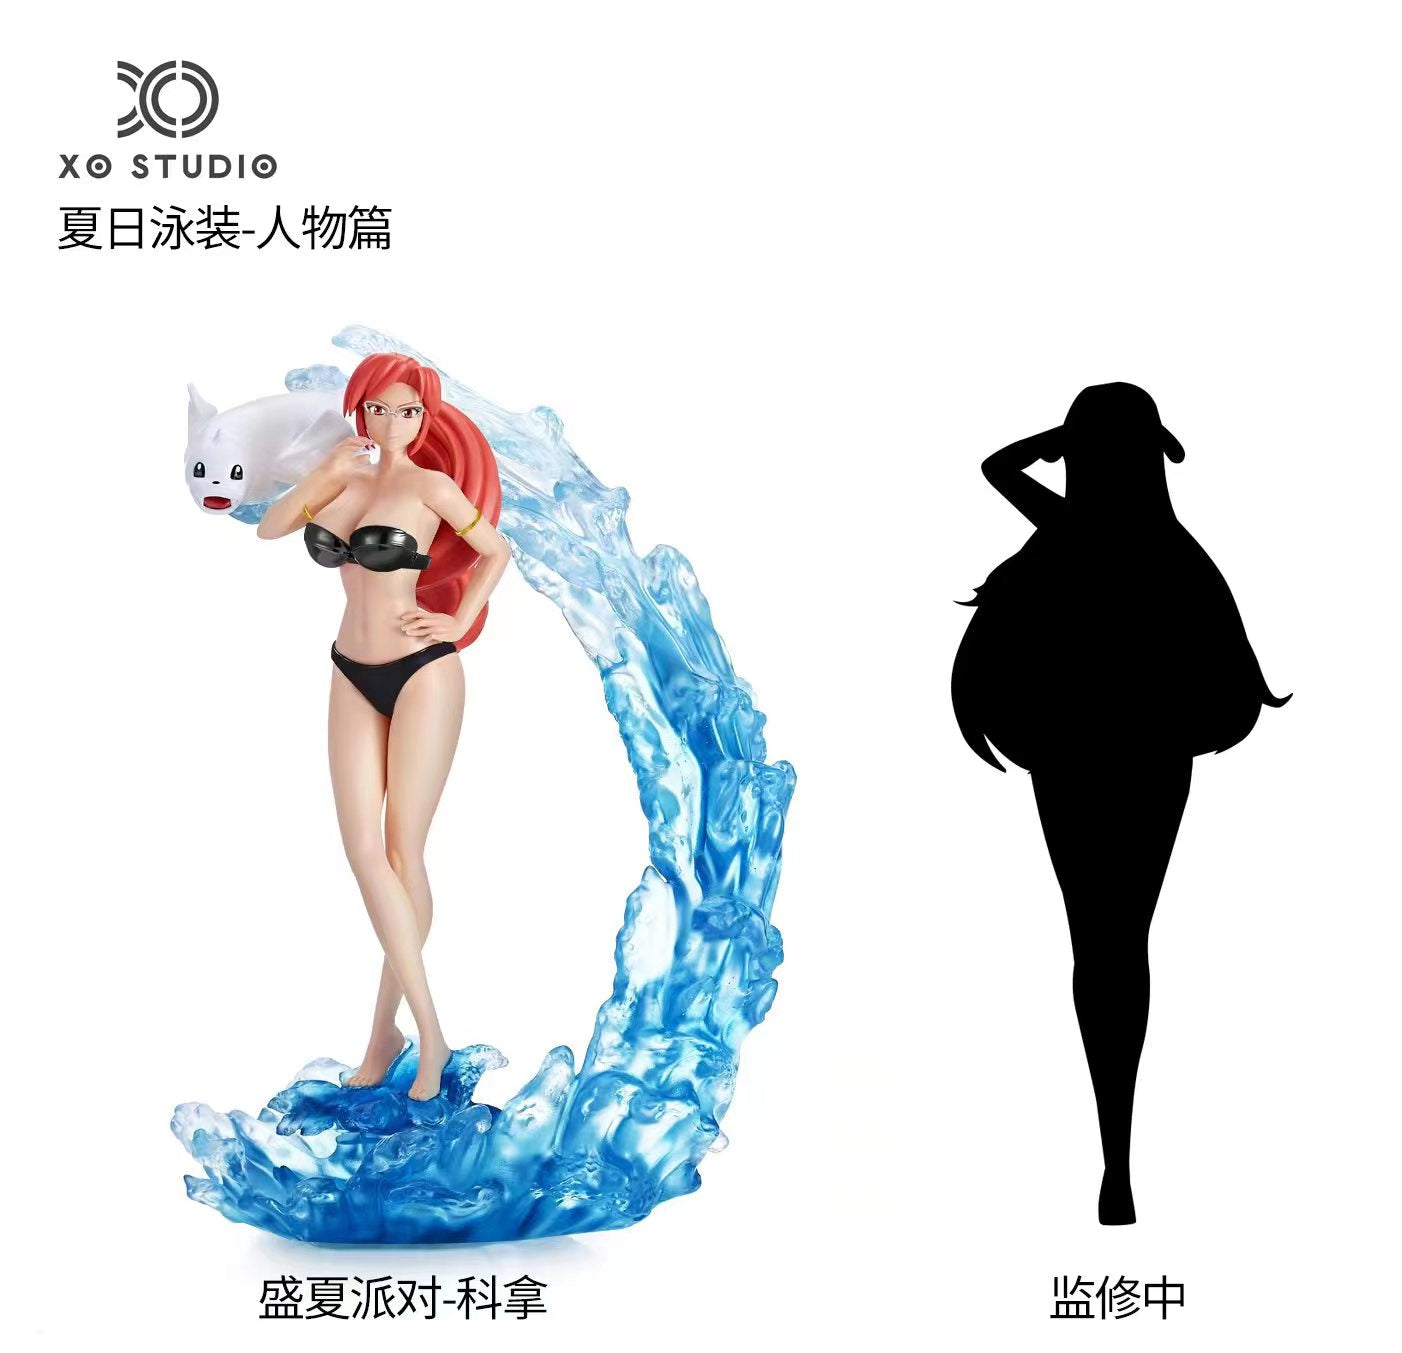 [PREORDER CLOSED] 1/10 Scale World Figure [XO] - Lorelei & Dewgong